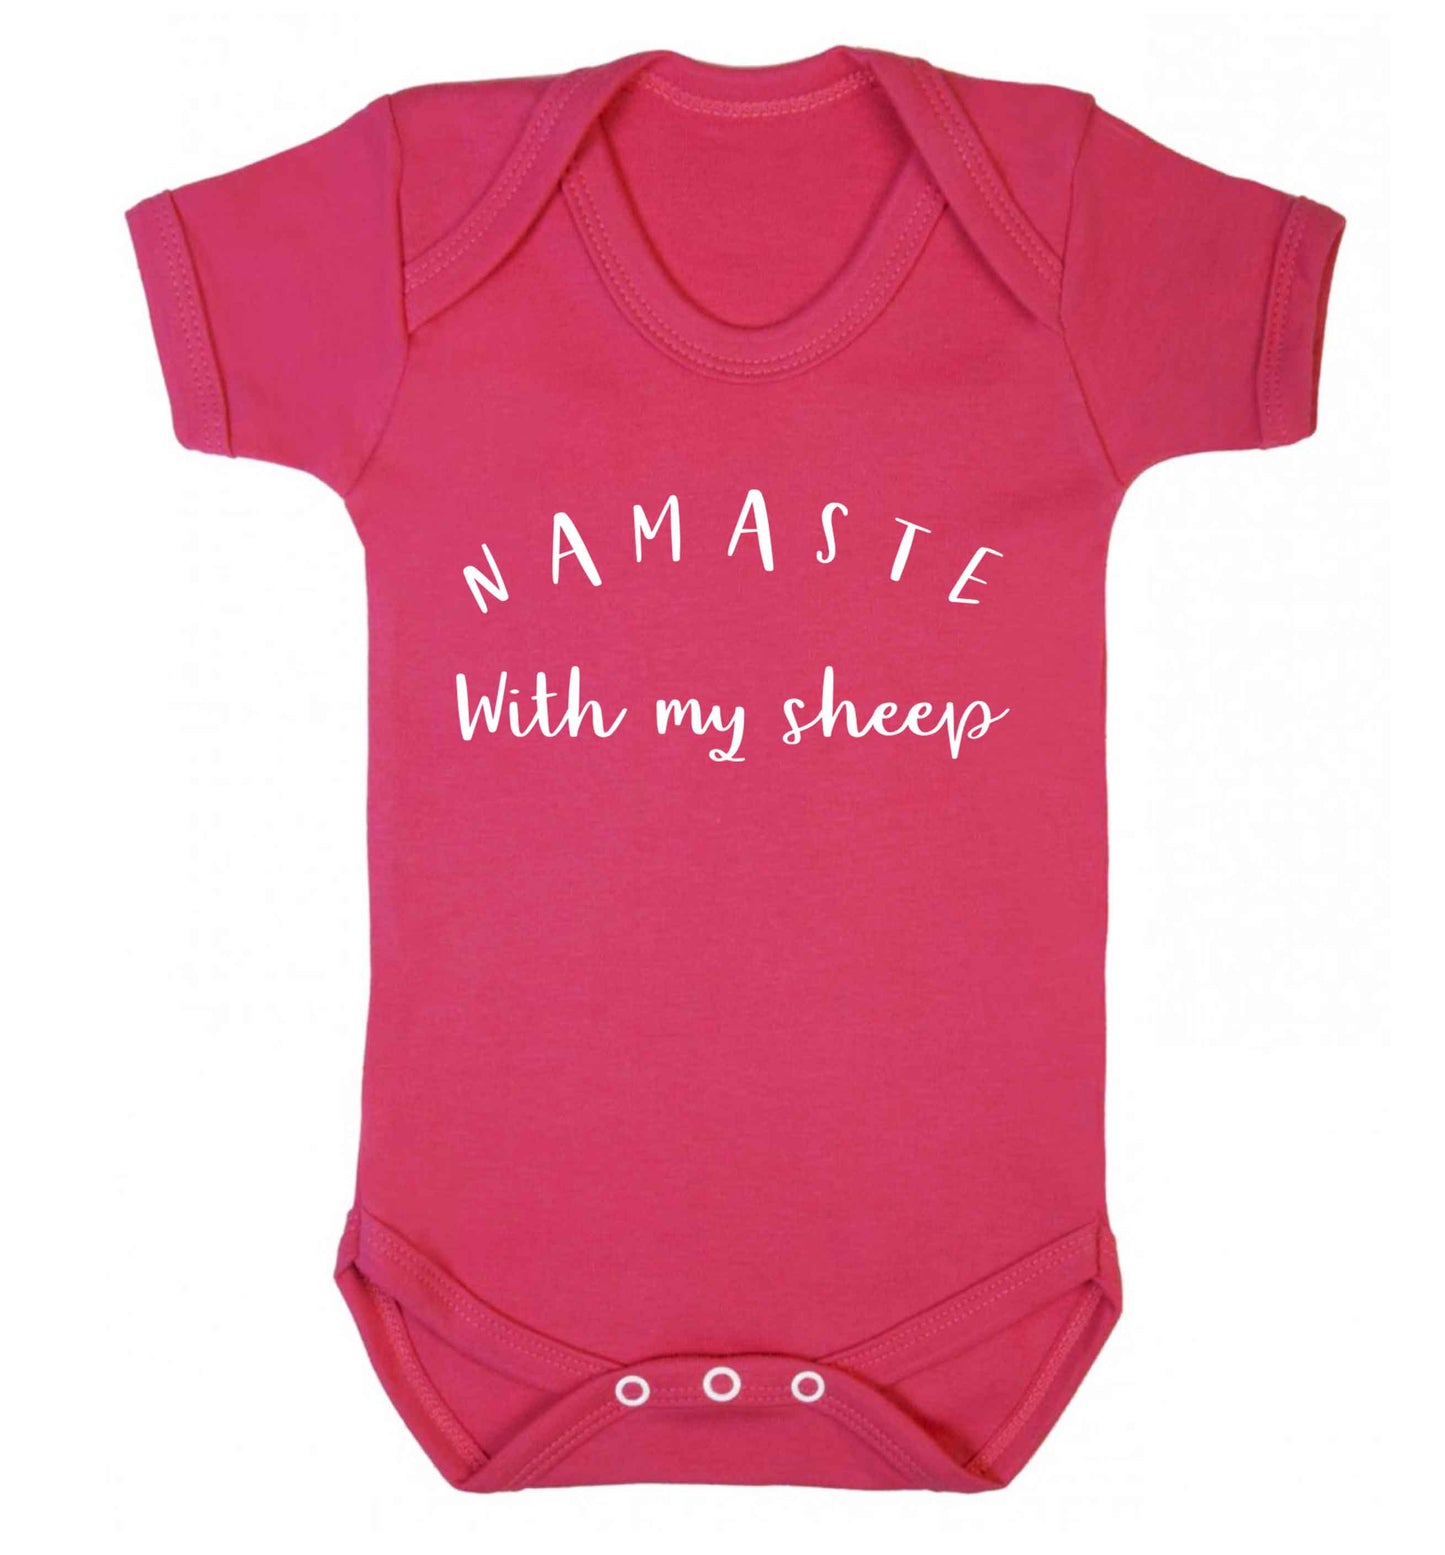 Namaste with my sheep Baby Vest dark pink 18-24 months